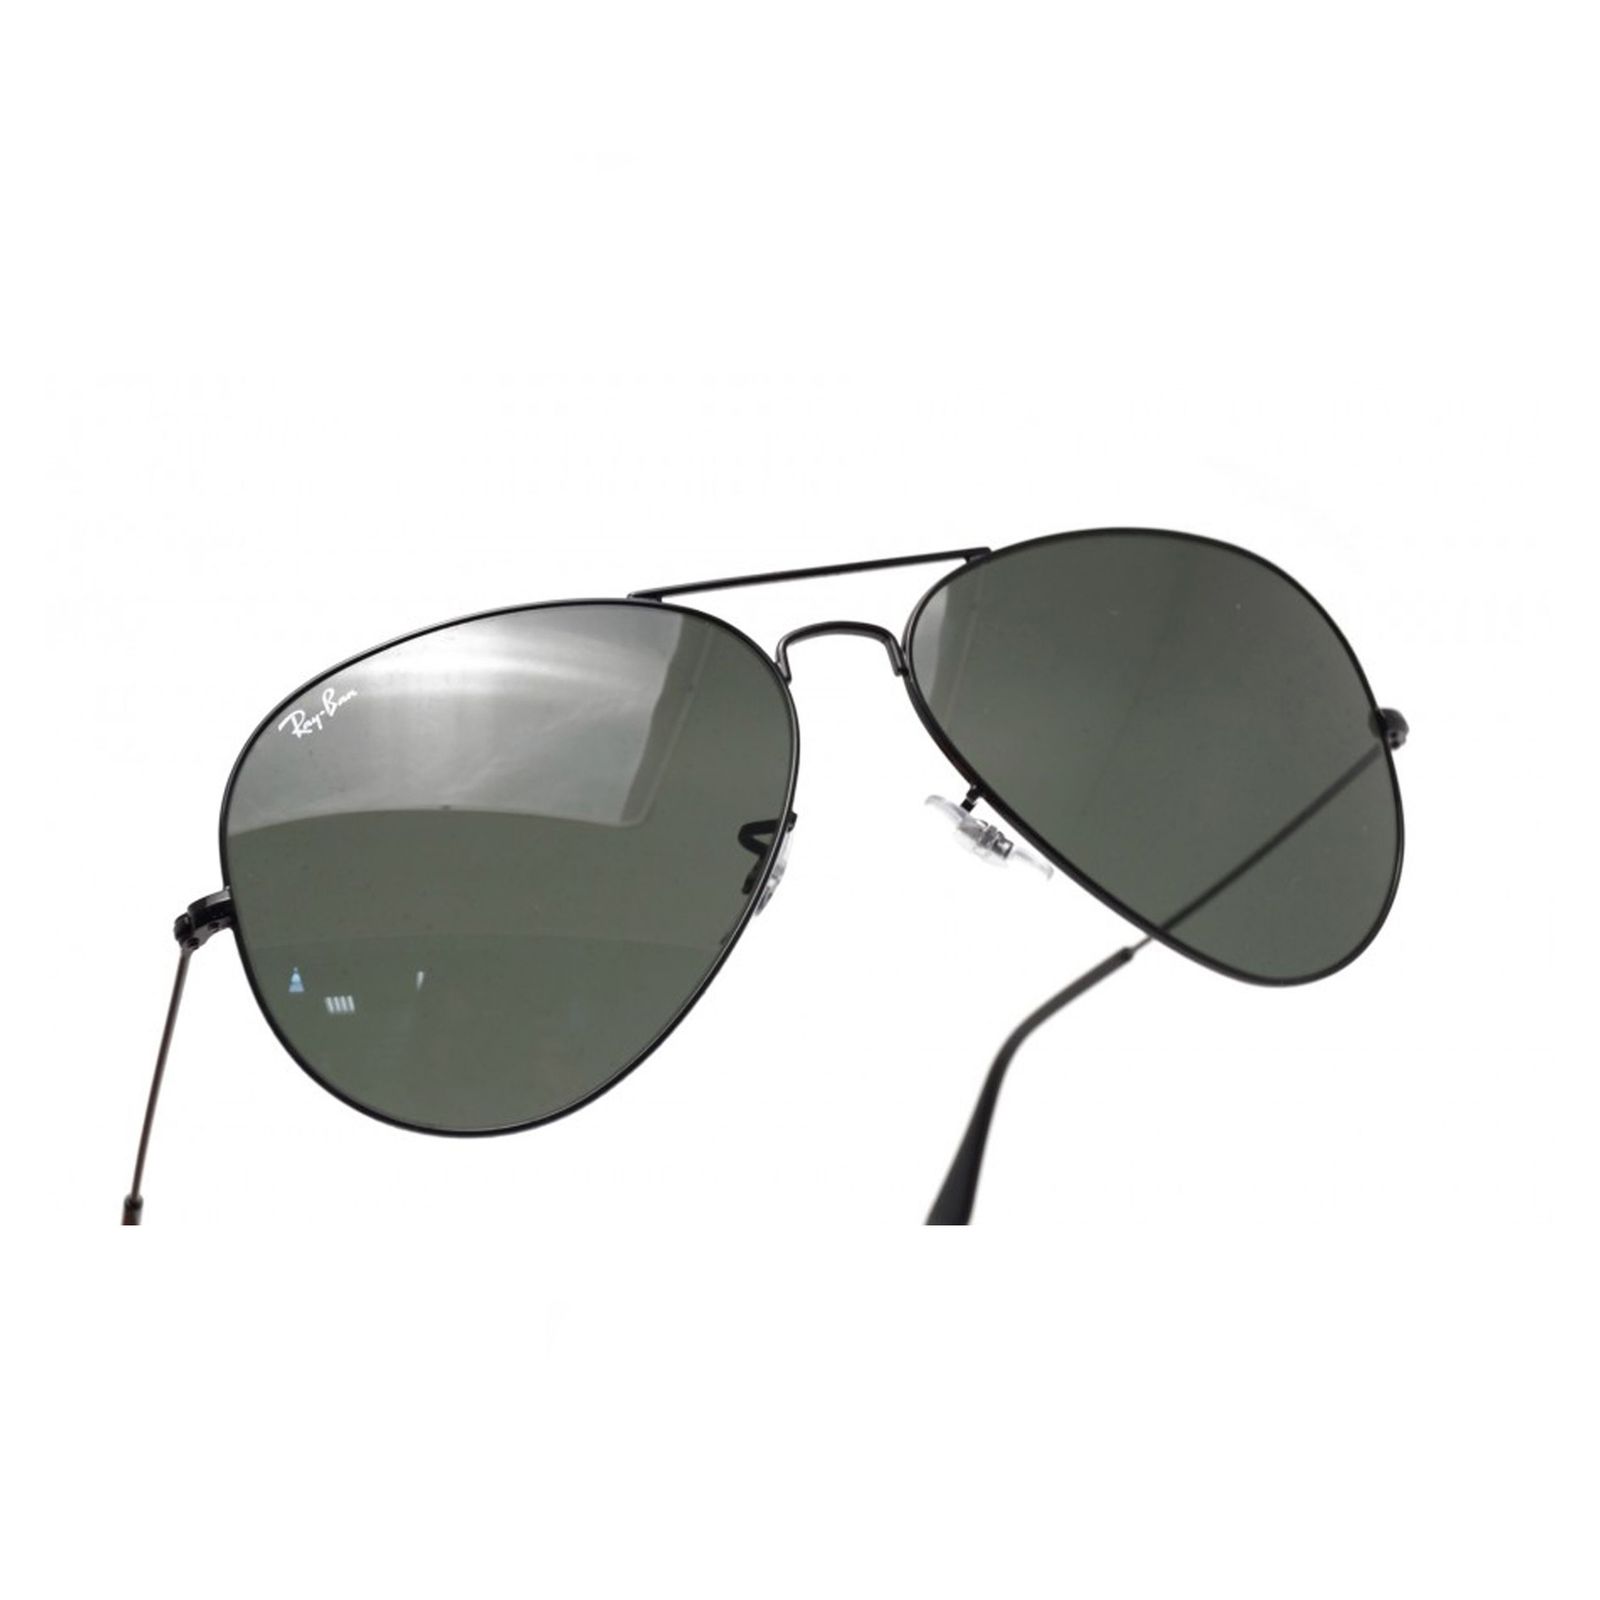 عینک آفتابی ری بن مدل 3026-l2821-62 - مشکی - 3